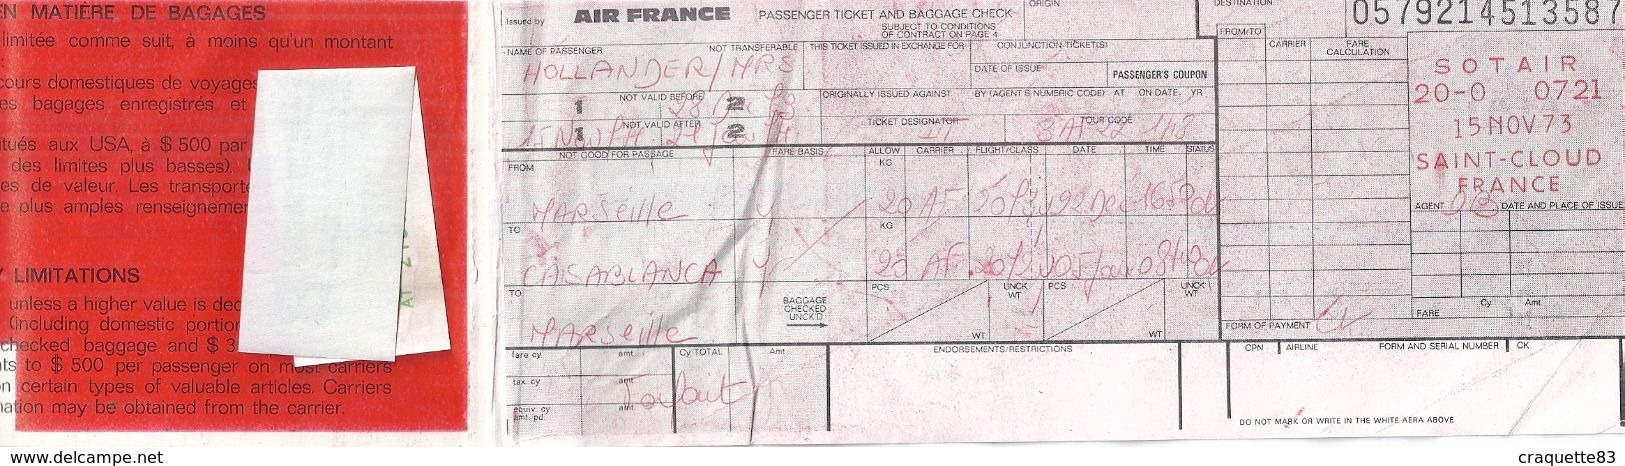 AIR FRANCE  MARSEILLE CASABLANCA  1973-BILLET DE PASSAGE ET BULLETIN DE BAGAGES - Monde